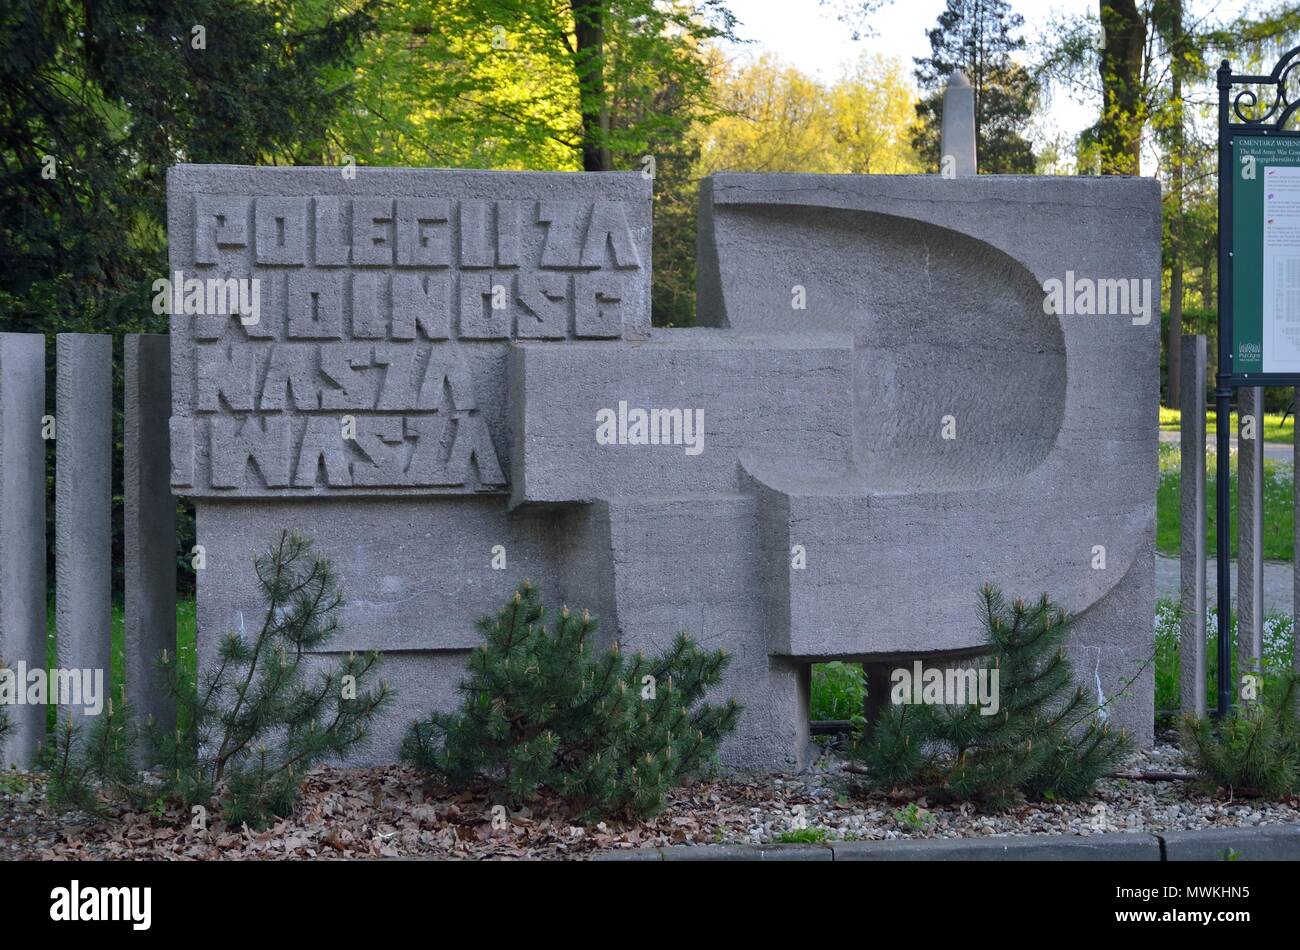 PSZCZYNA, Polen - 22. APRIL 2018: Eingang zum Friedhof der sowjetischen Soldaten in Pszczyna, Polen. Stockfoto